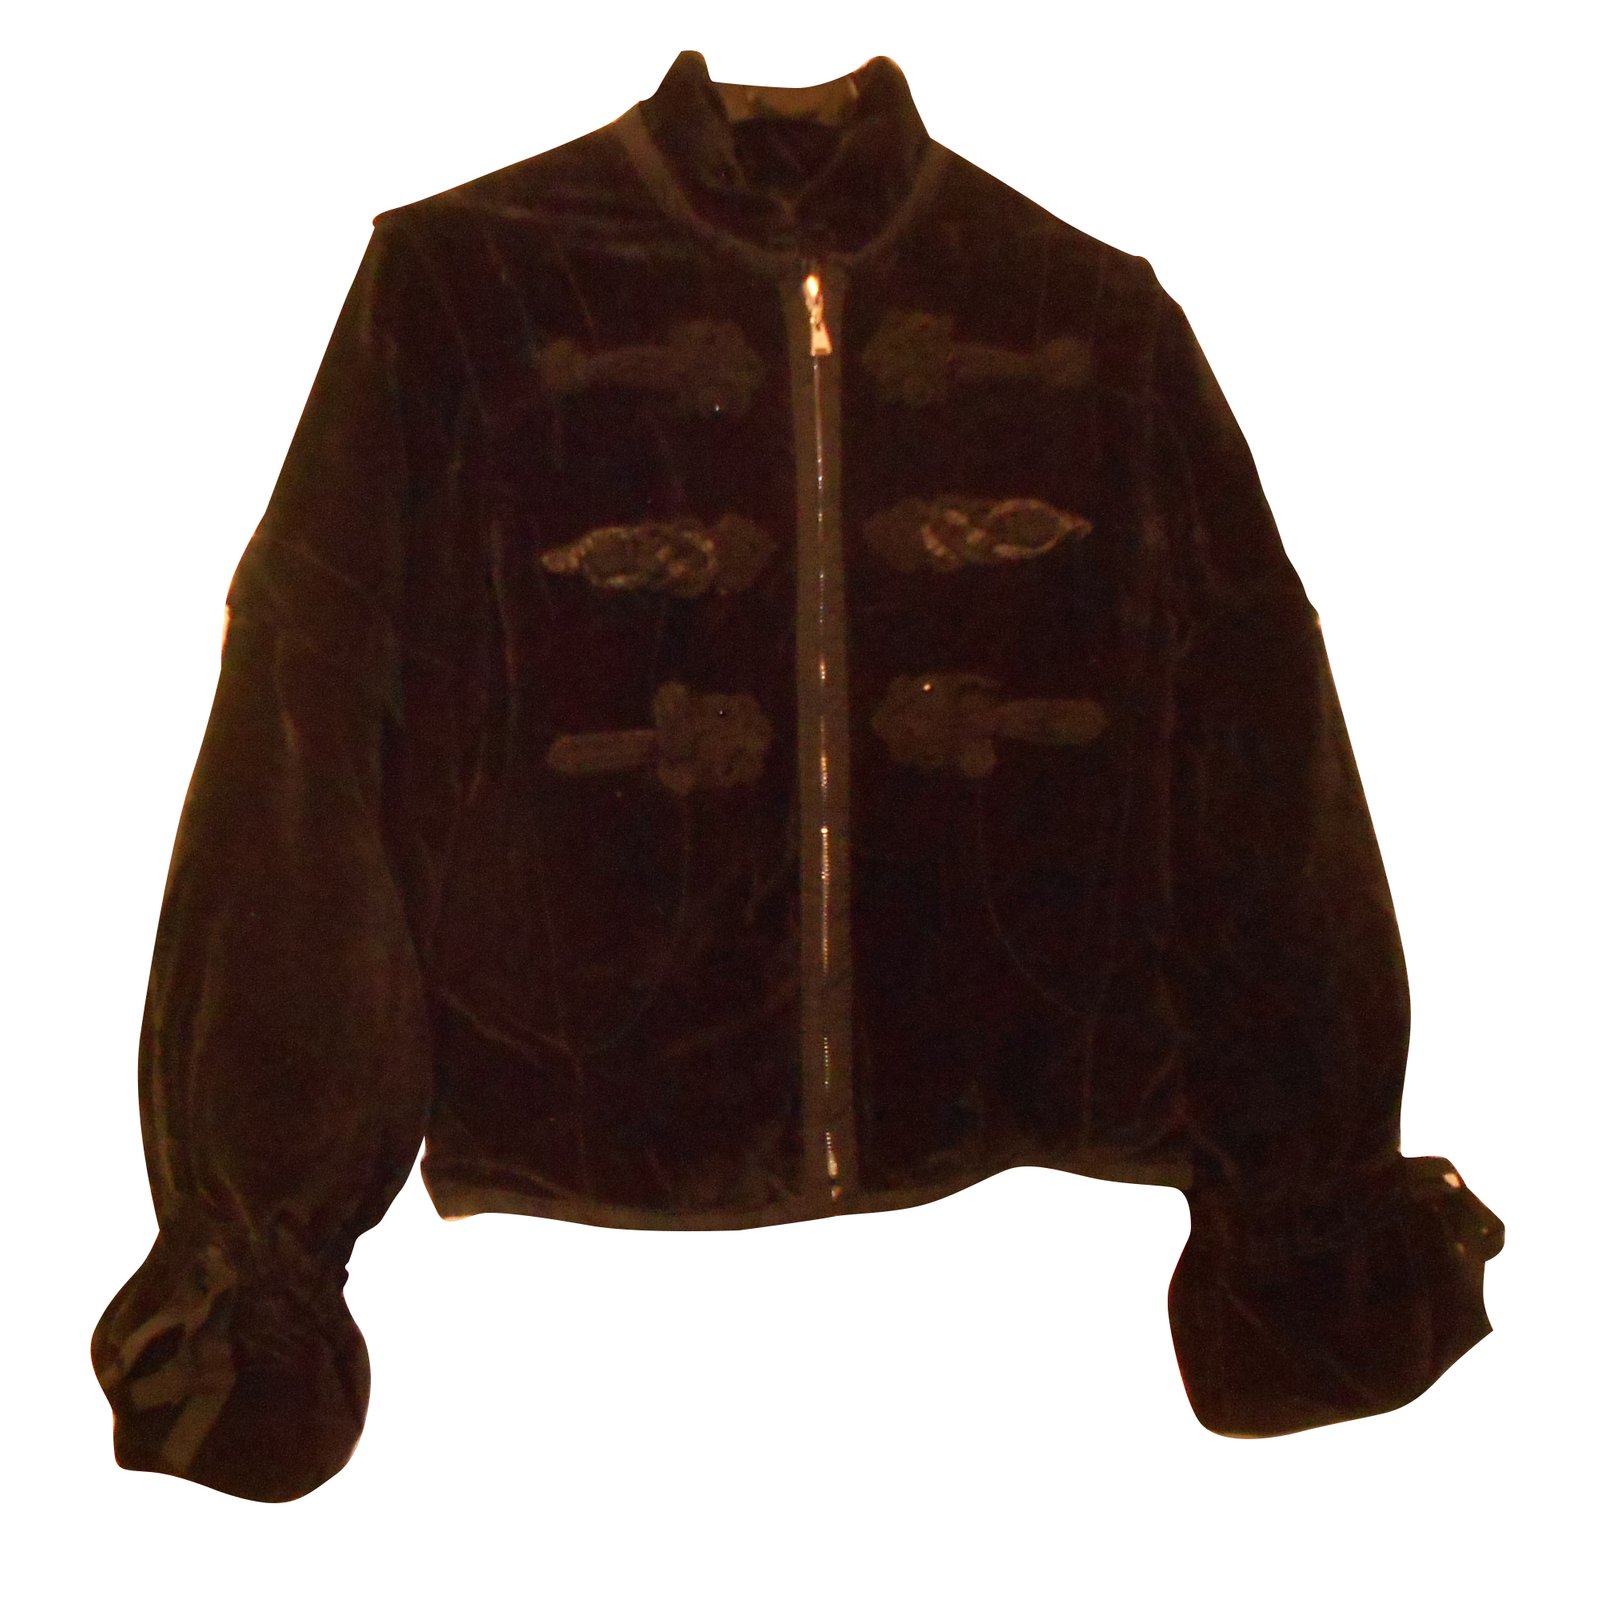 Vintage Louis Vuitton Jacket Coat. Large.